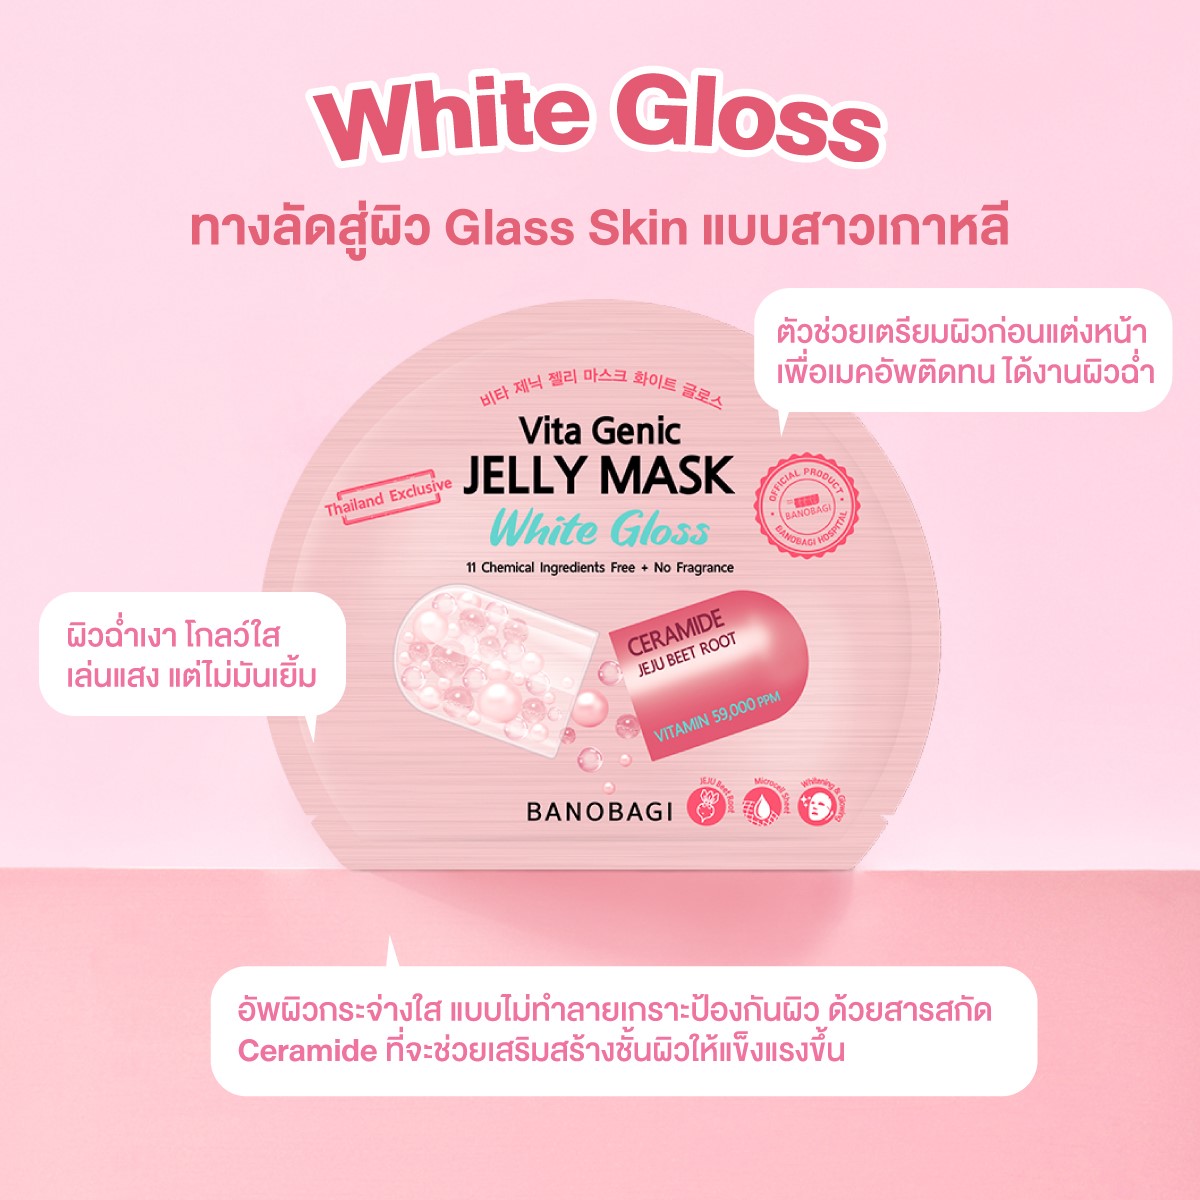 BANOBAGI Vita Genic Jelly Mask White Gloss 